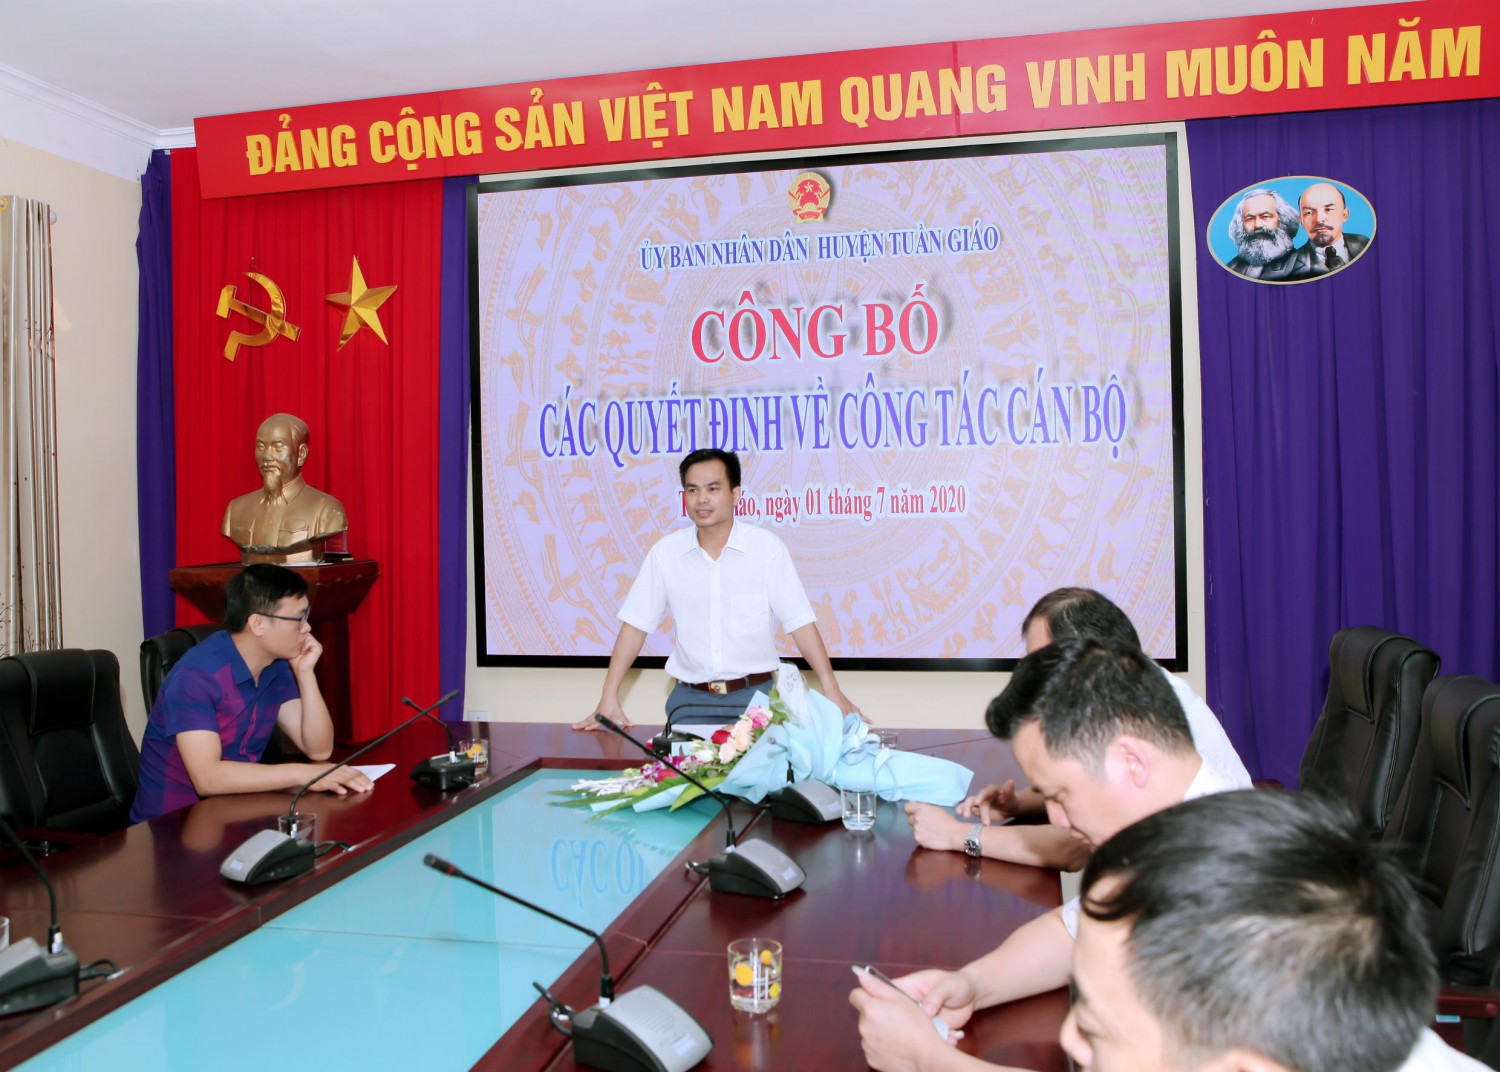 Đ/c Nguyễn Văn Bách - Tân Phó Chánh Văn phòng HĐND - UBND hình bầu cua tôm cá
 phát biểu nhận nhiệm vụ